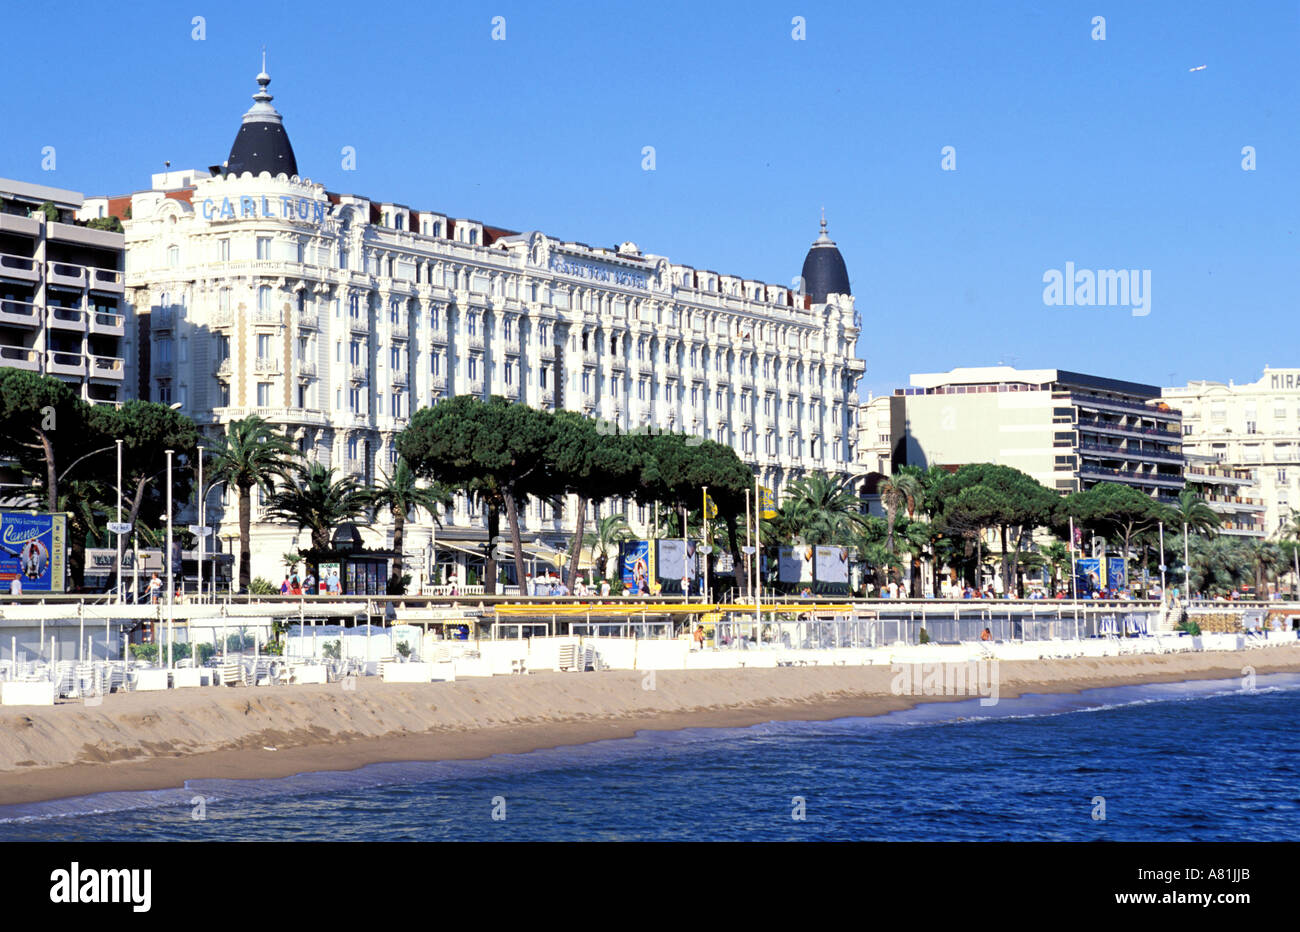 France, Alpes Maritimes, Cannes, le Carlton Hotel (hôtel du palais sur la Croisette) Banque D'Images